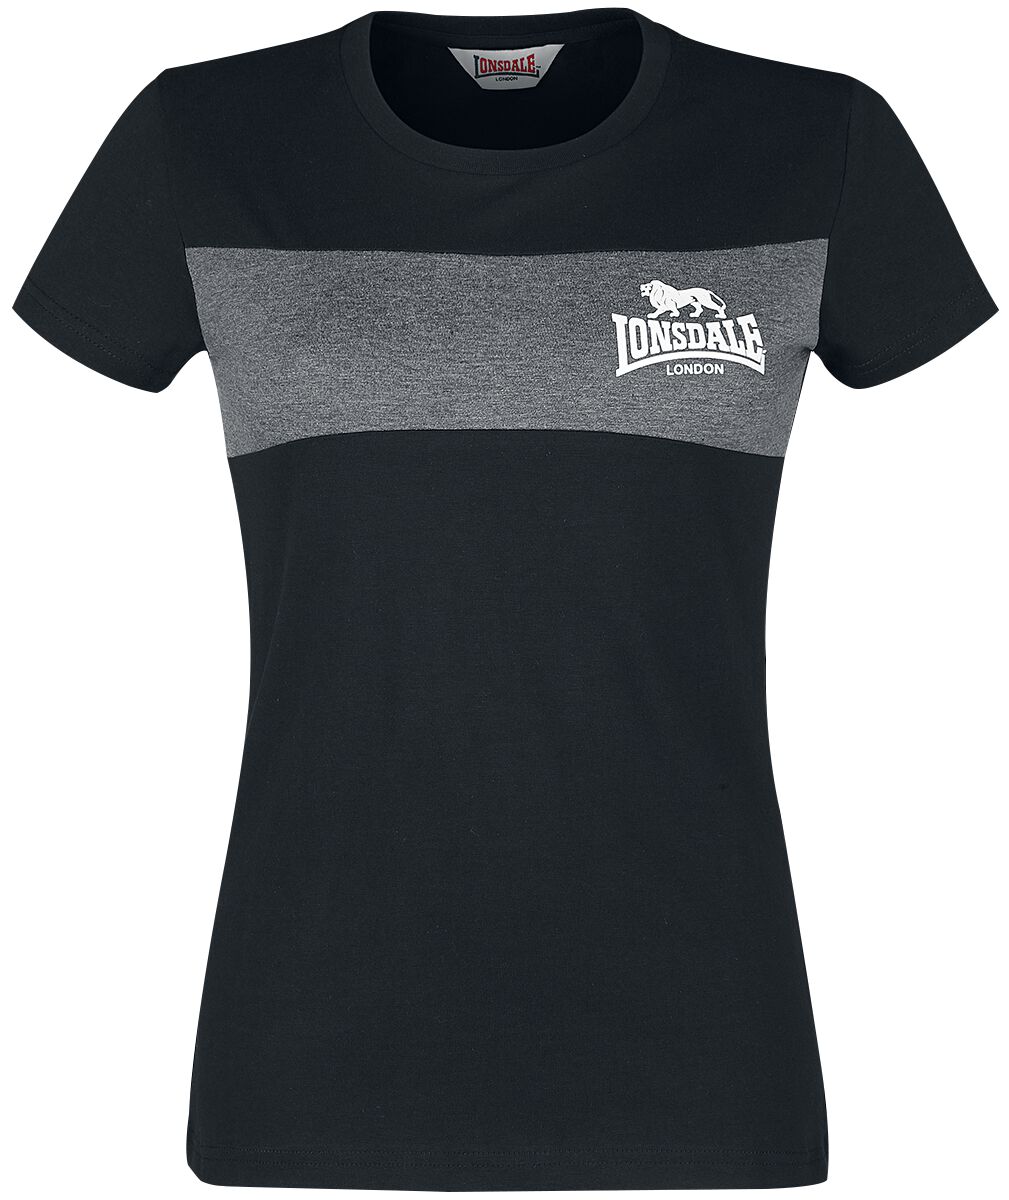 Lonsdale London T-Shirt - Dawsmere - XS bis 3XL - für Damen - Größe L - schwarz von Lonsdale London